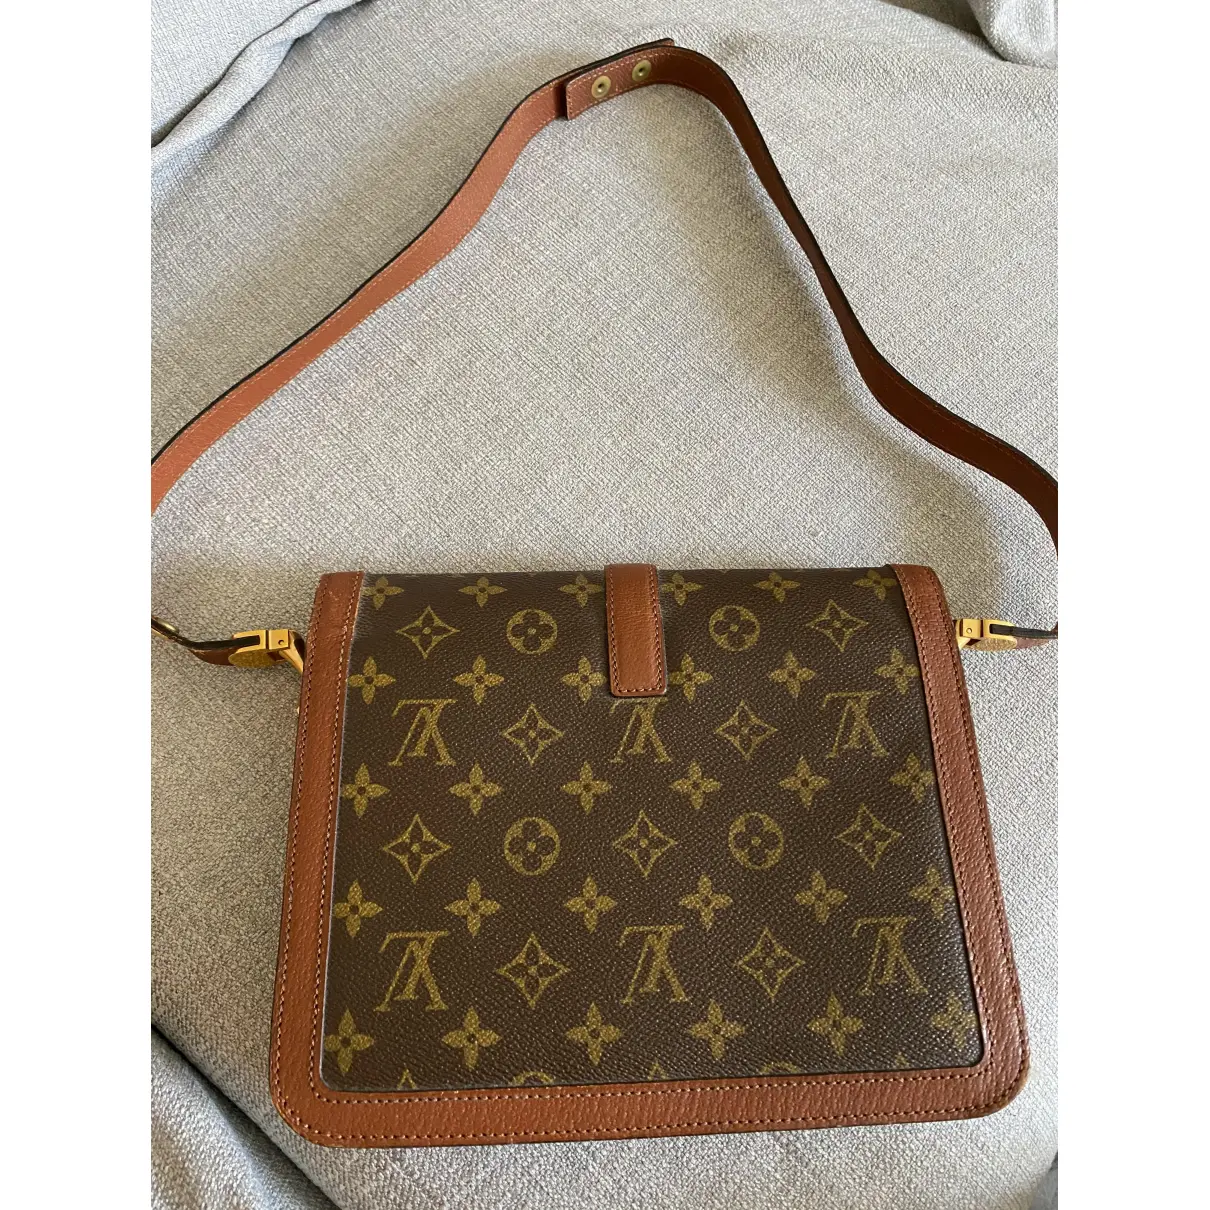 Buy Louis Vuitton Cloth handbag online - Vintage